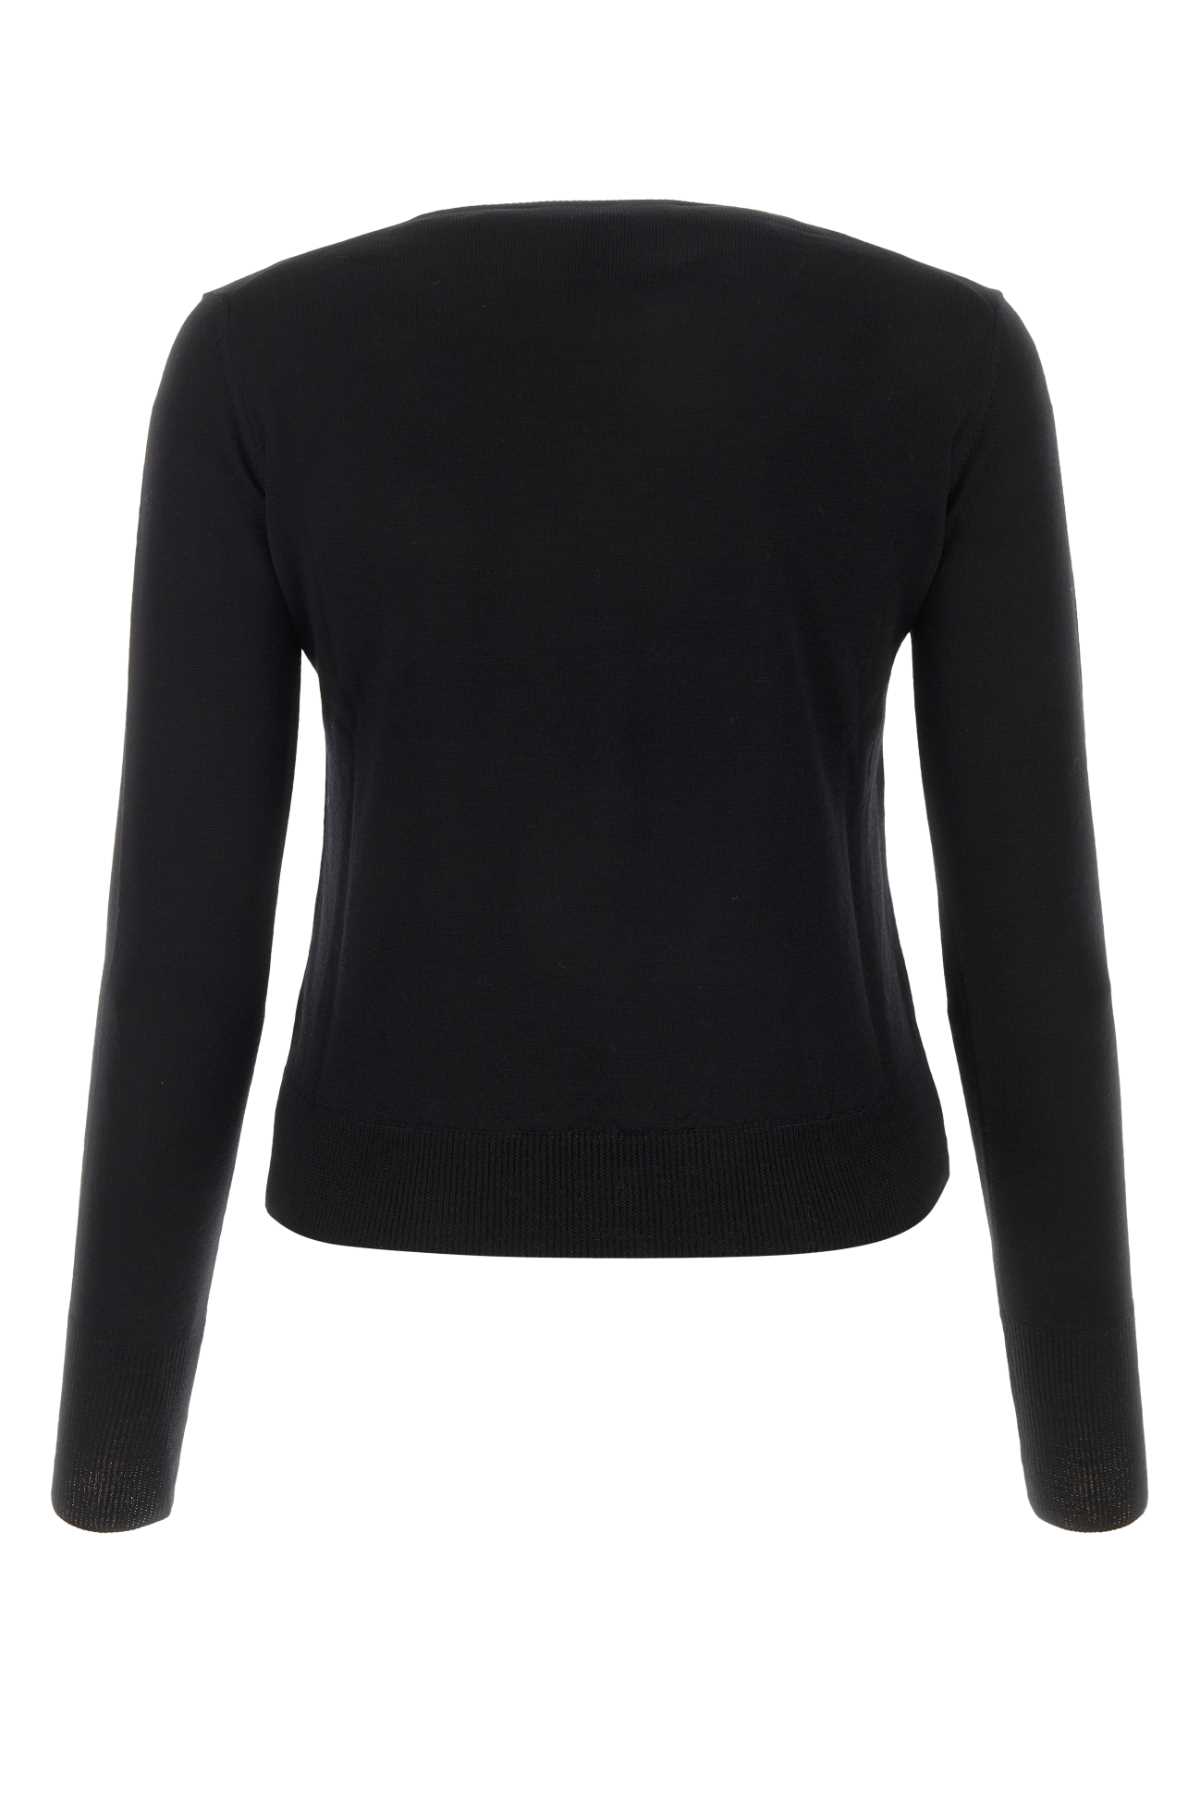 Vivienne Westwood Black Wool Sweater In N403